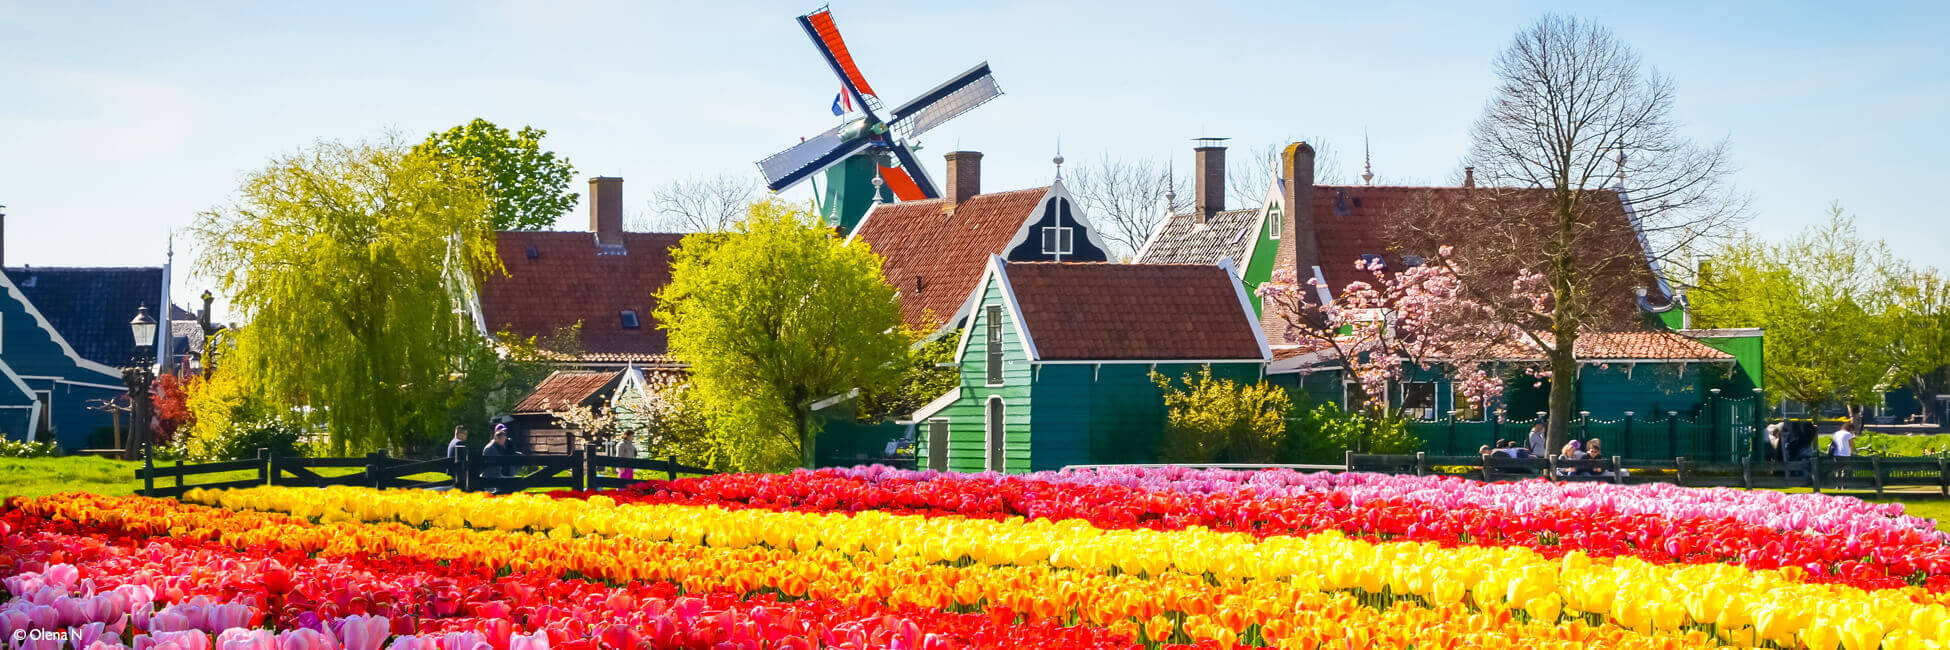 AAV_PP - Crucero fluvial por Holanda, país de los tulipanes